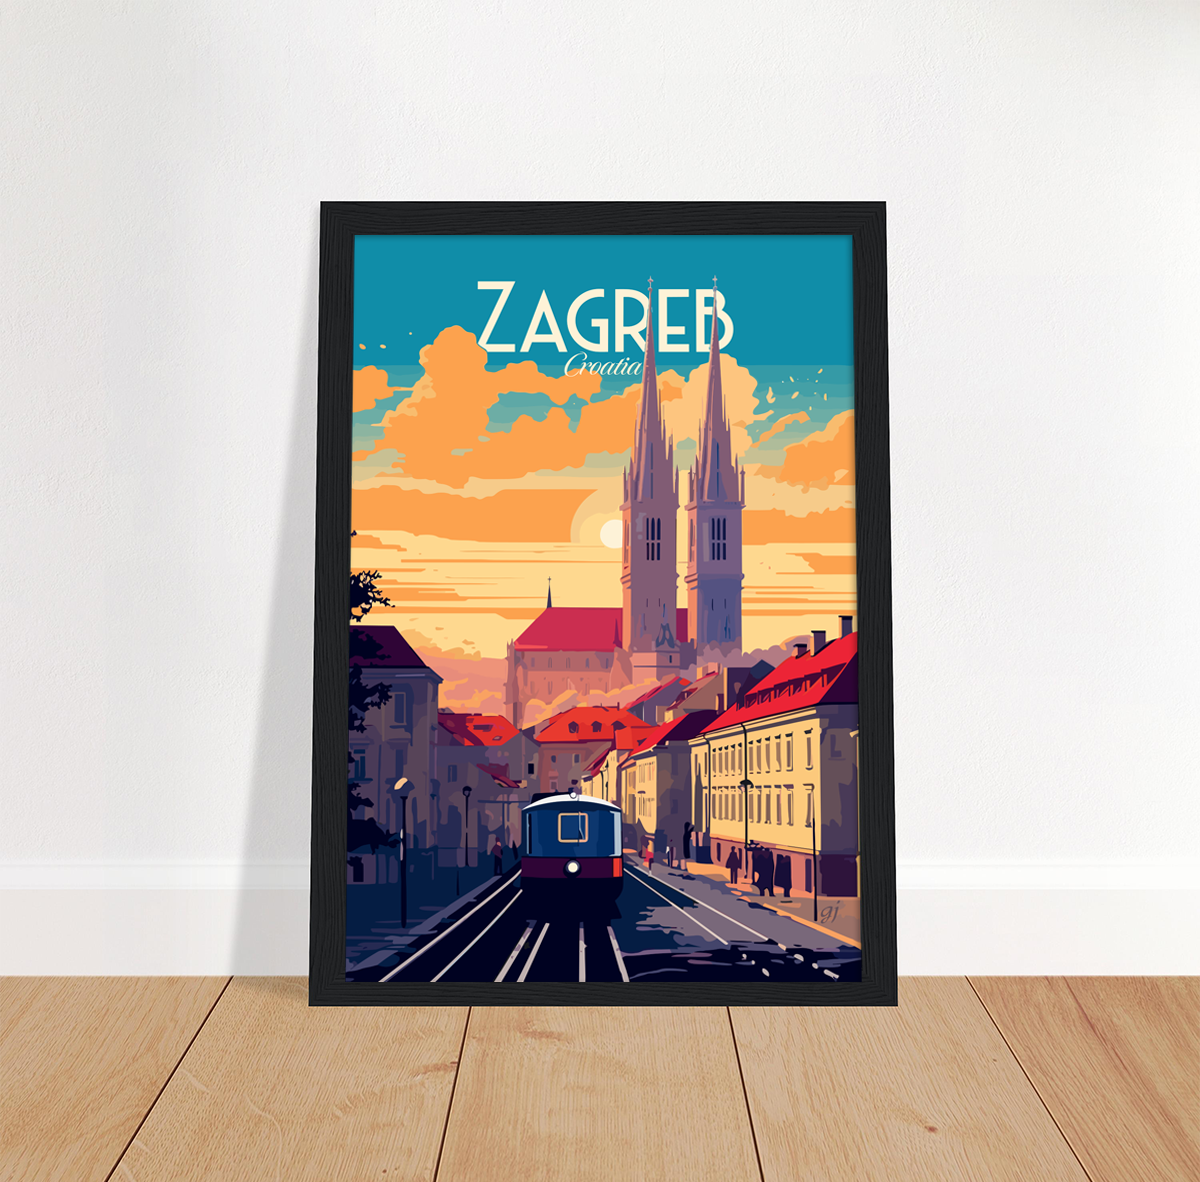 Zagreb poster by bon voyage design